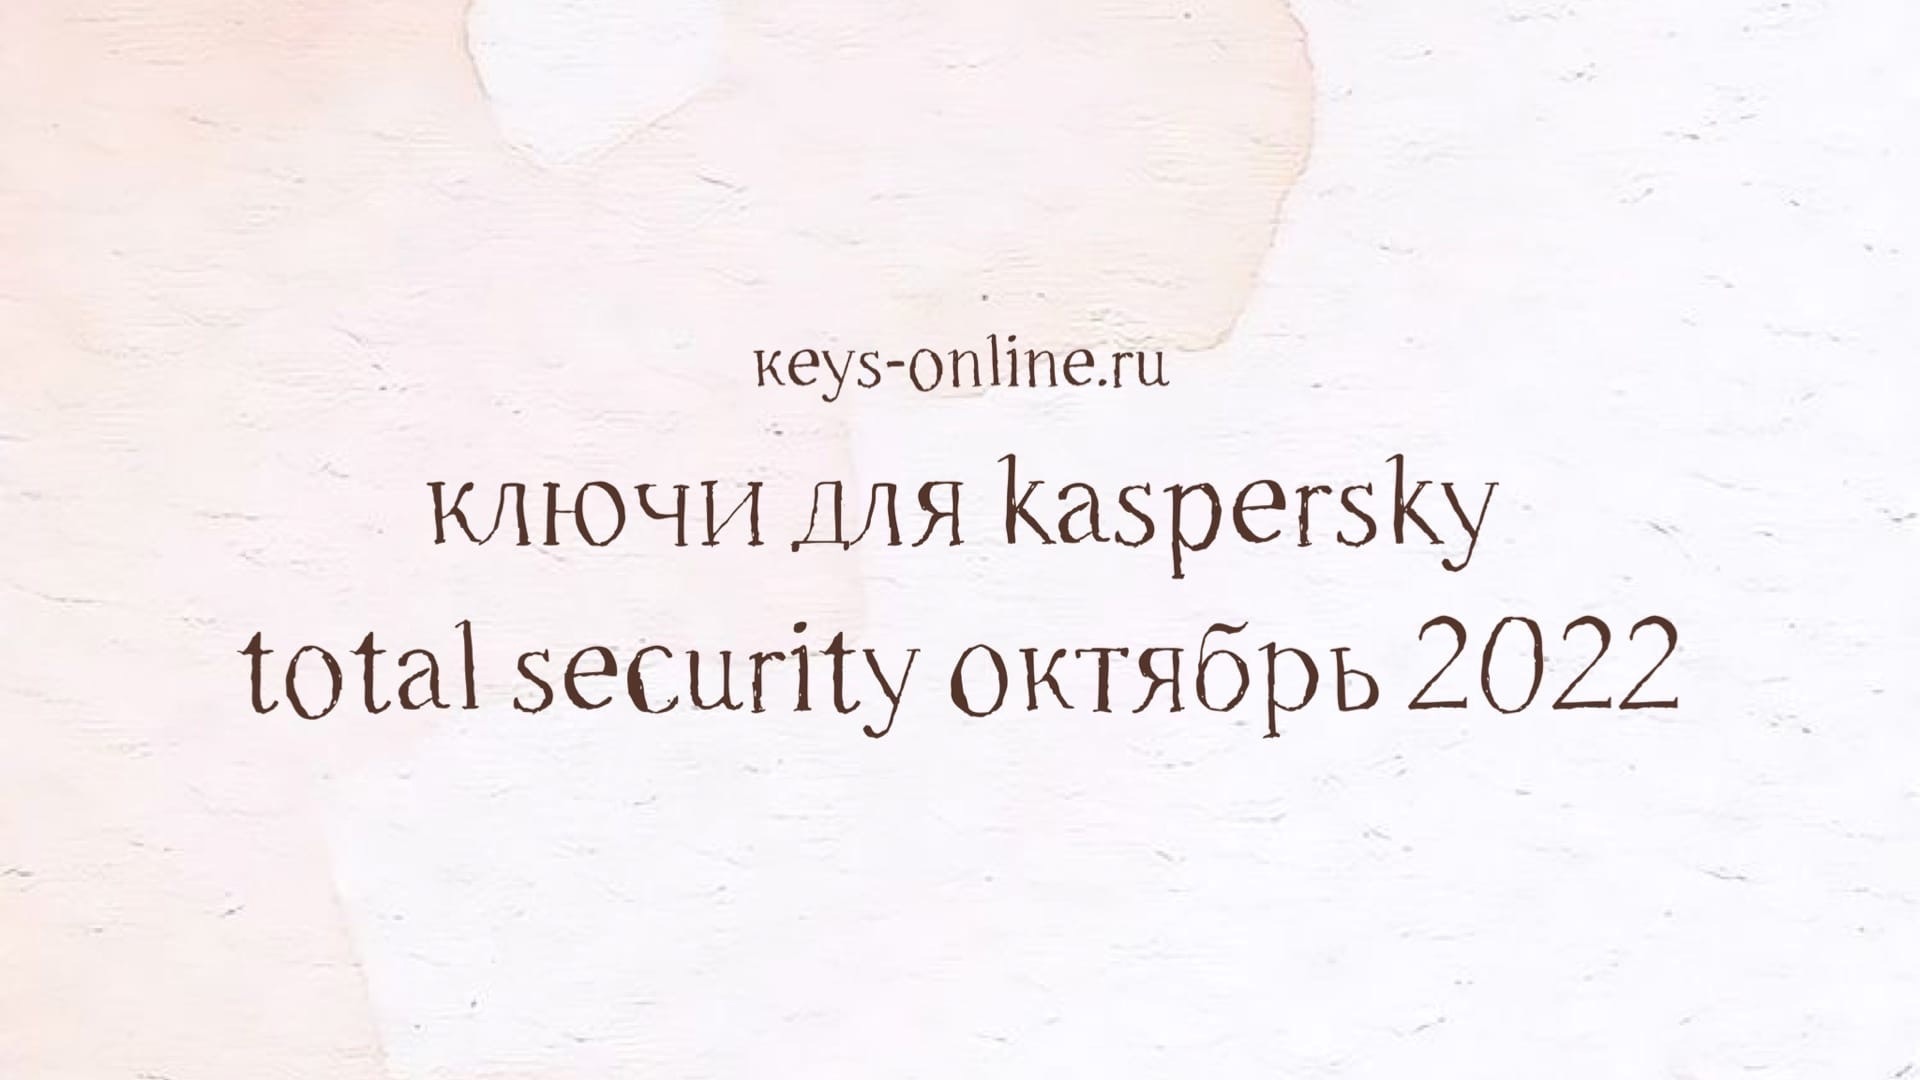 Ключи для Kaspersky total security октябрь 2022